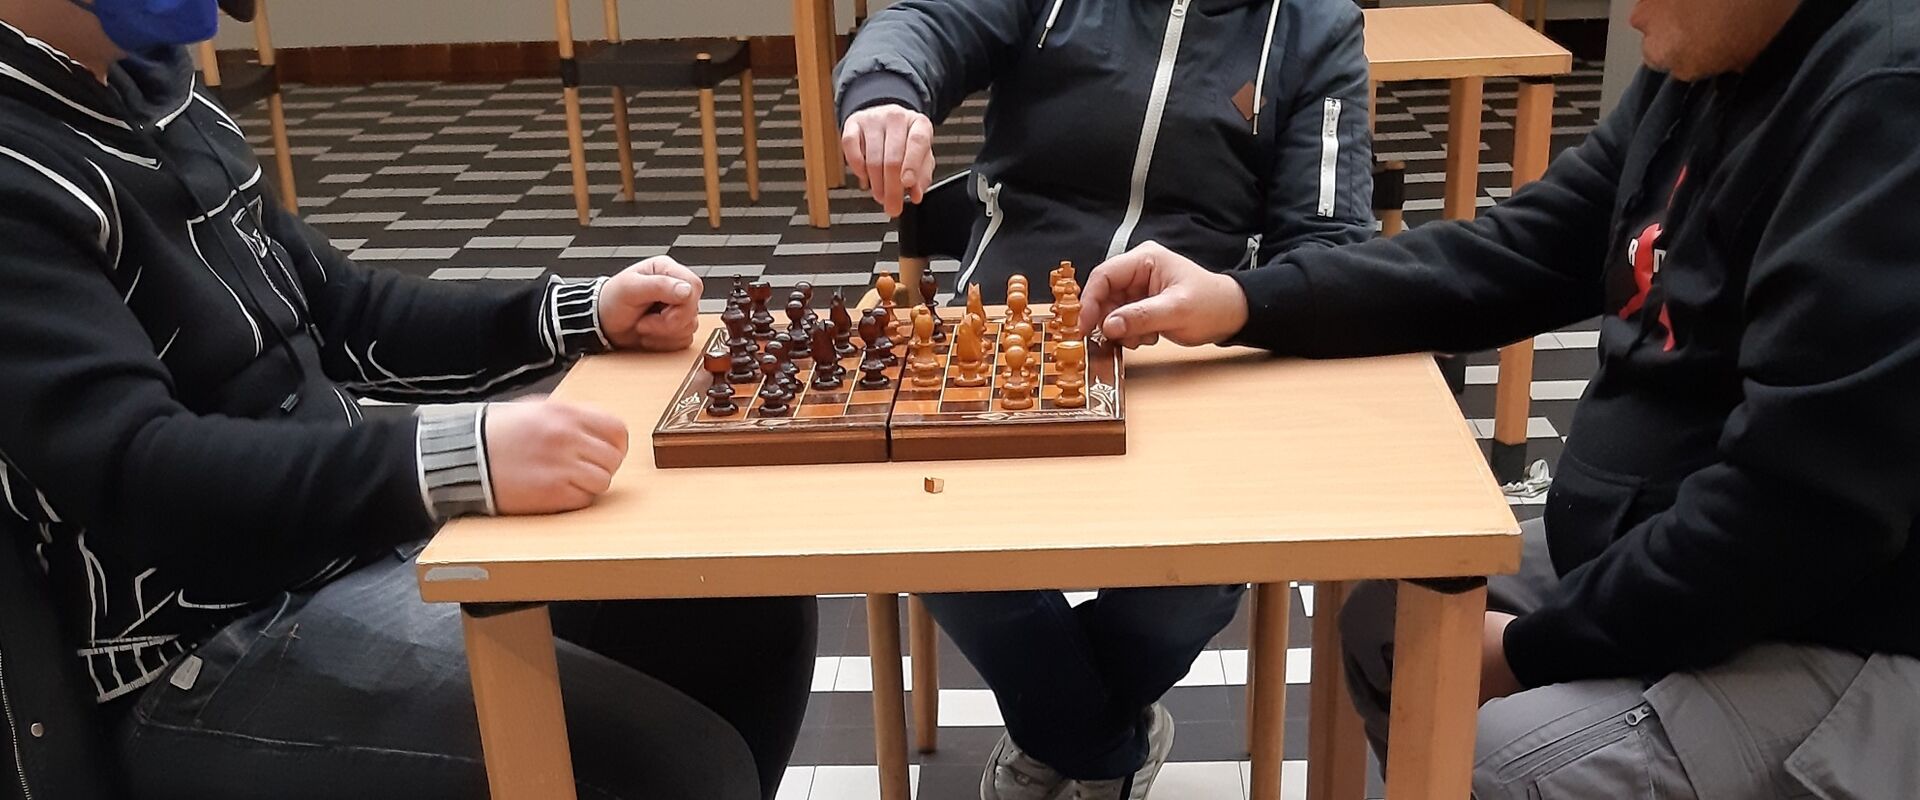 Eine Partie Schach ist mehr als nur ein Spiel für ehemals obdachlose Männer.